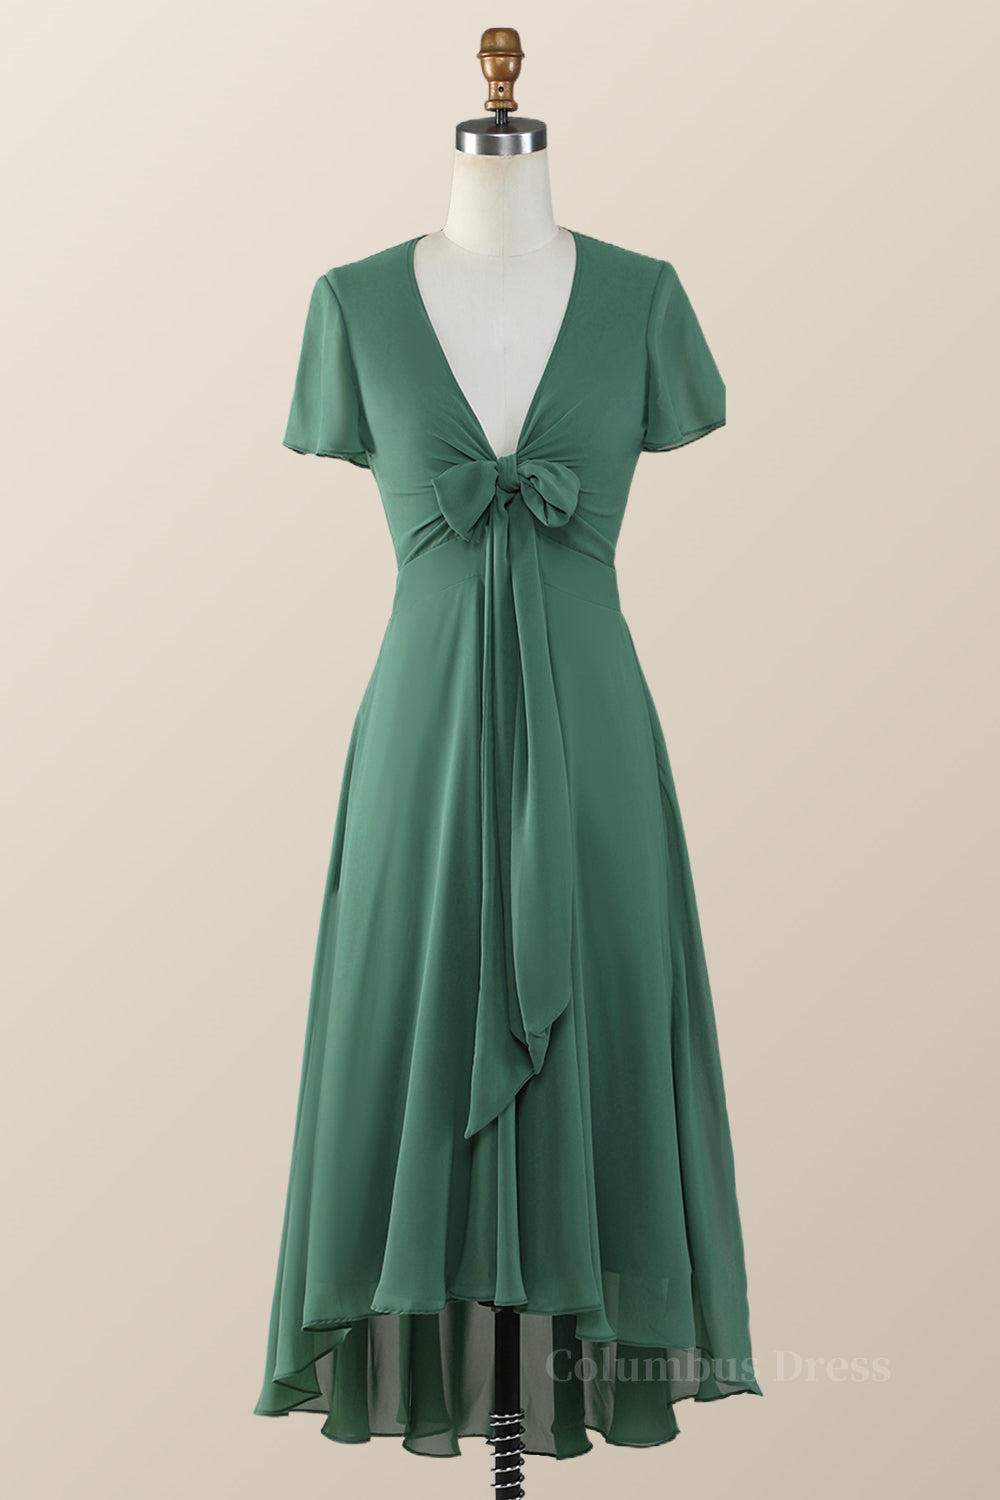 Bridesmaid Dress Mauve, Knot Front Green Chiffon Long Bridesmaid Dress